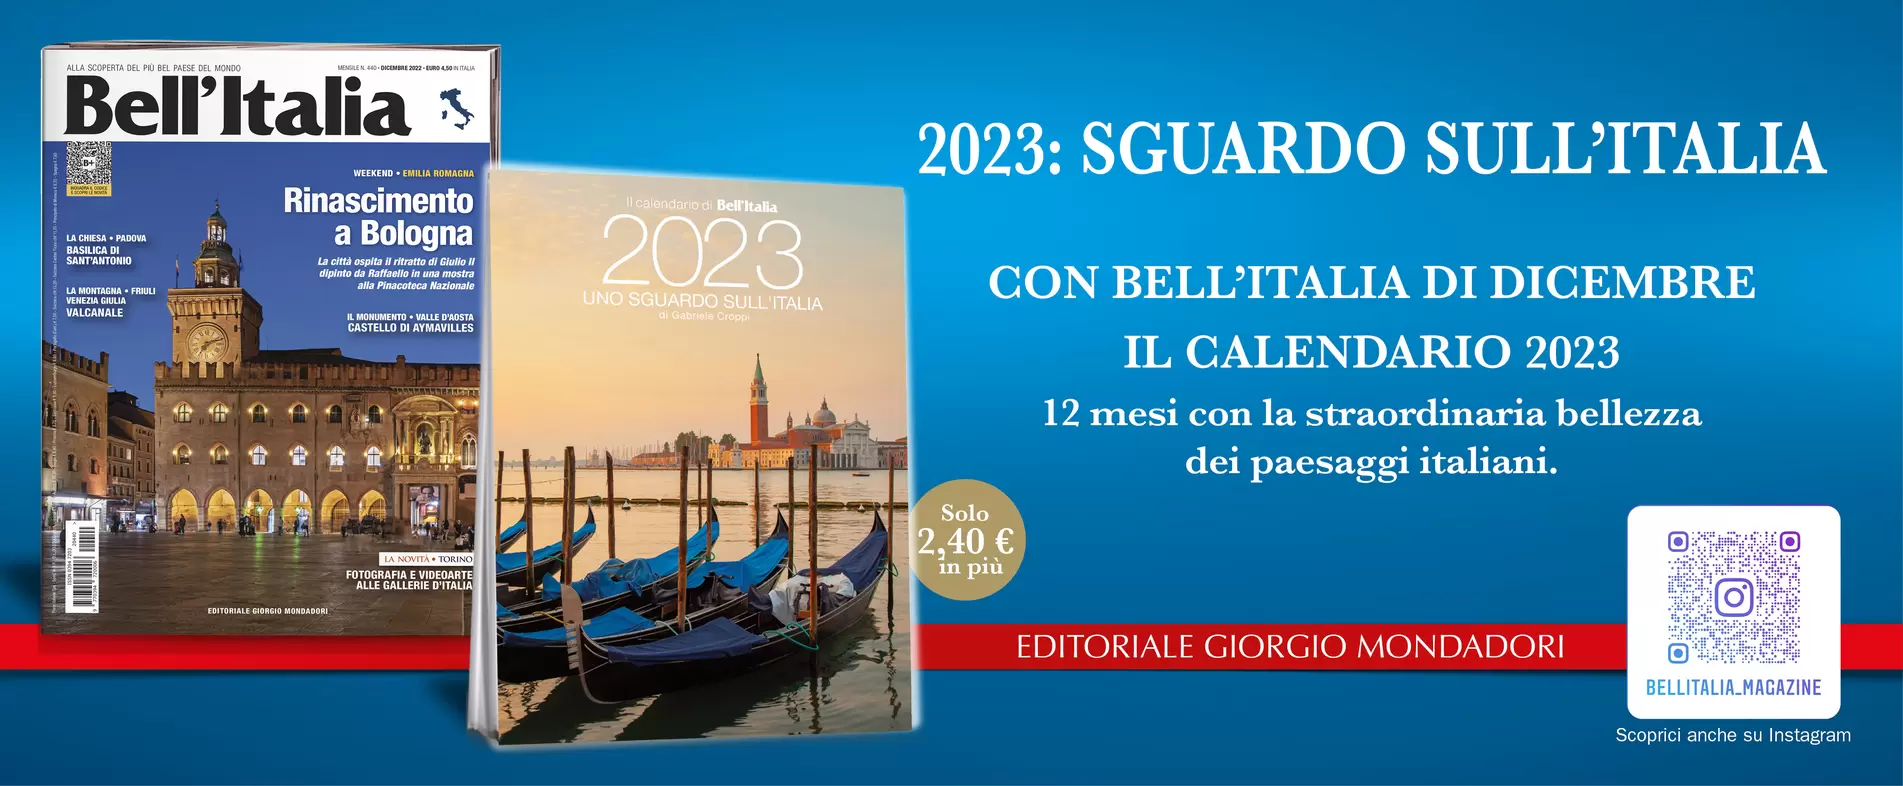 2023: SGUARDO SULL’ITALIA